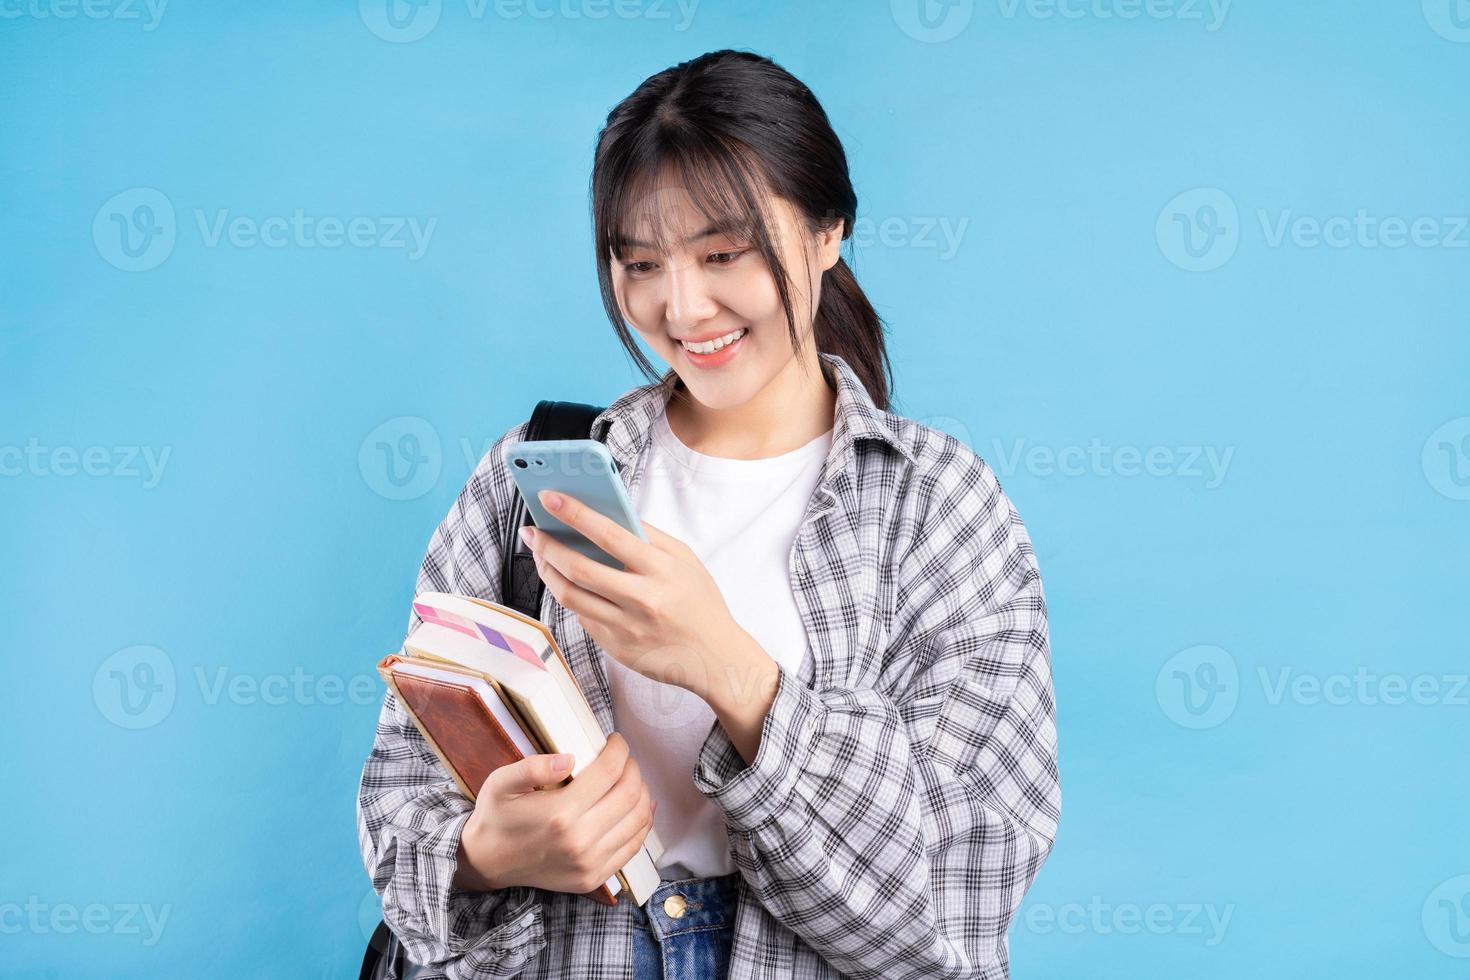 étudiante asiatique avec une expression ludique sur fond bleu photo